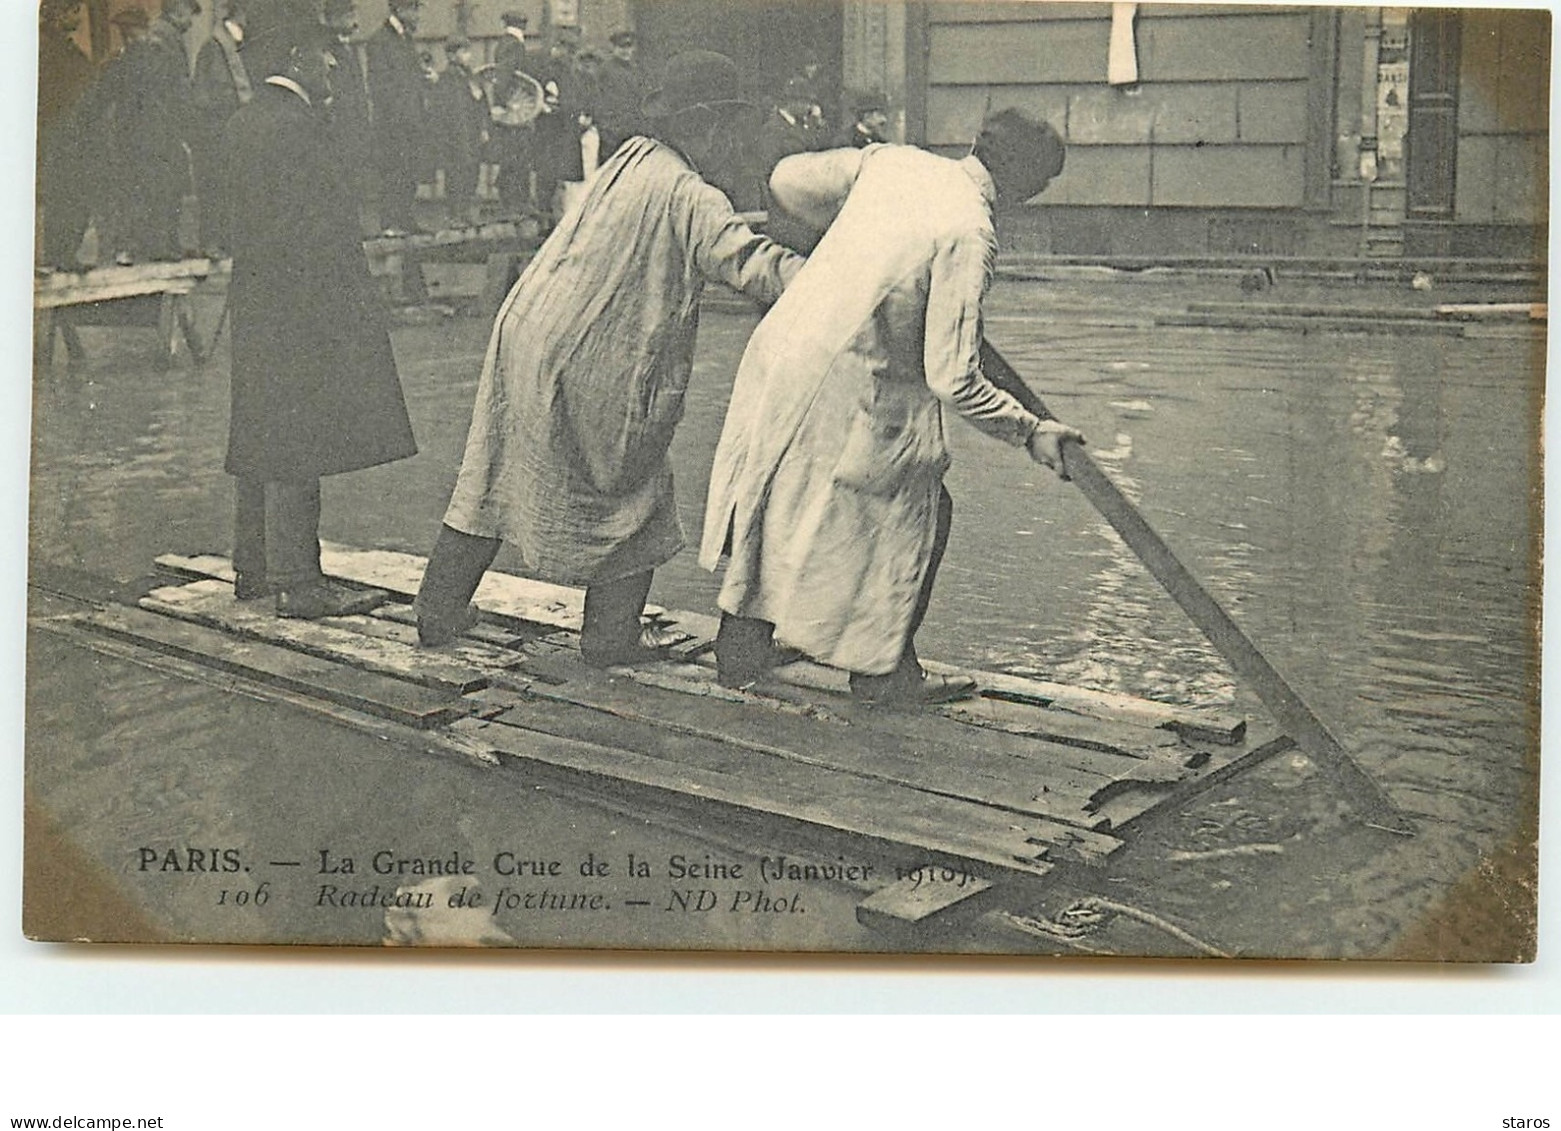 La Grande Crue De La Seine - PARIS - Radeau De Fortune - Paris Flood, 1910